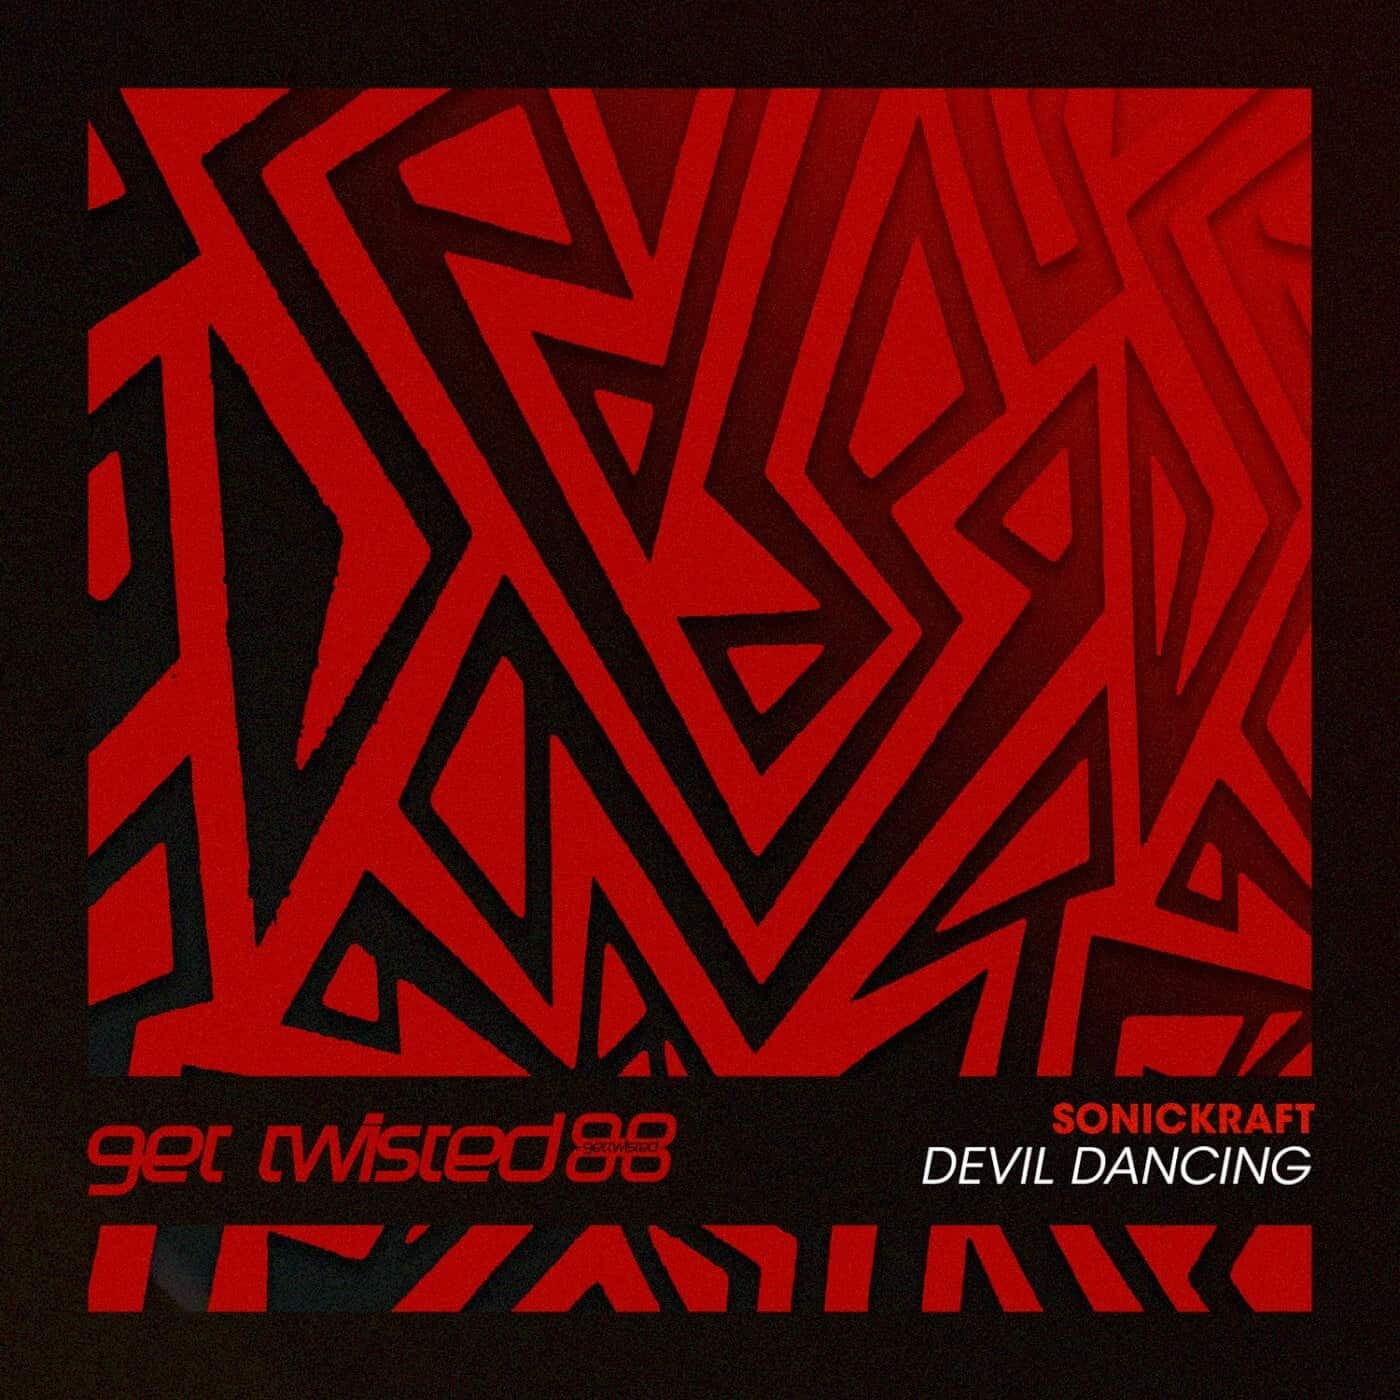 Download Devil Dancing on Electrobuzz